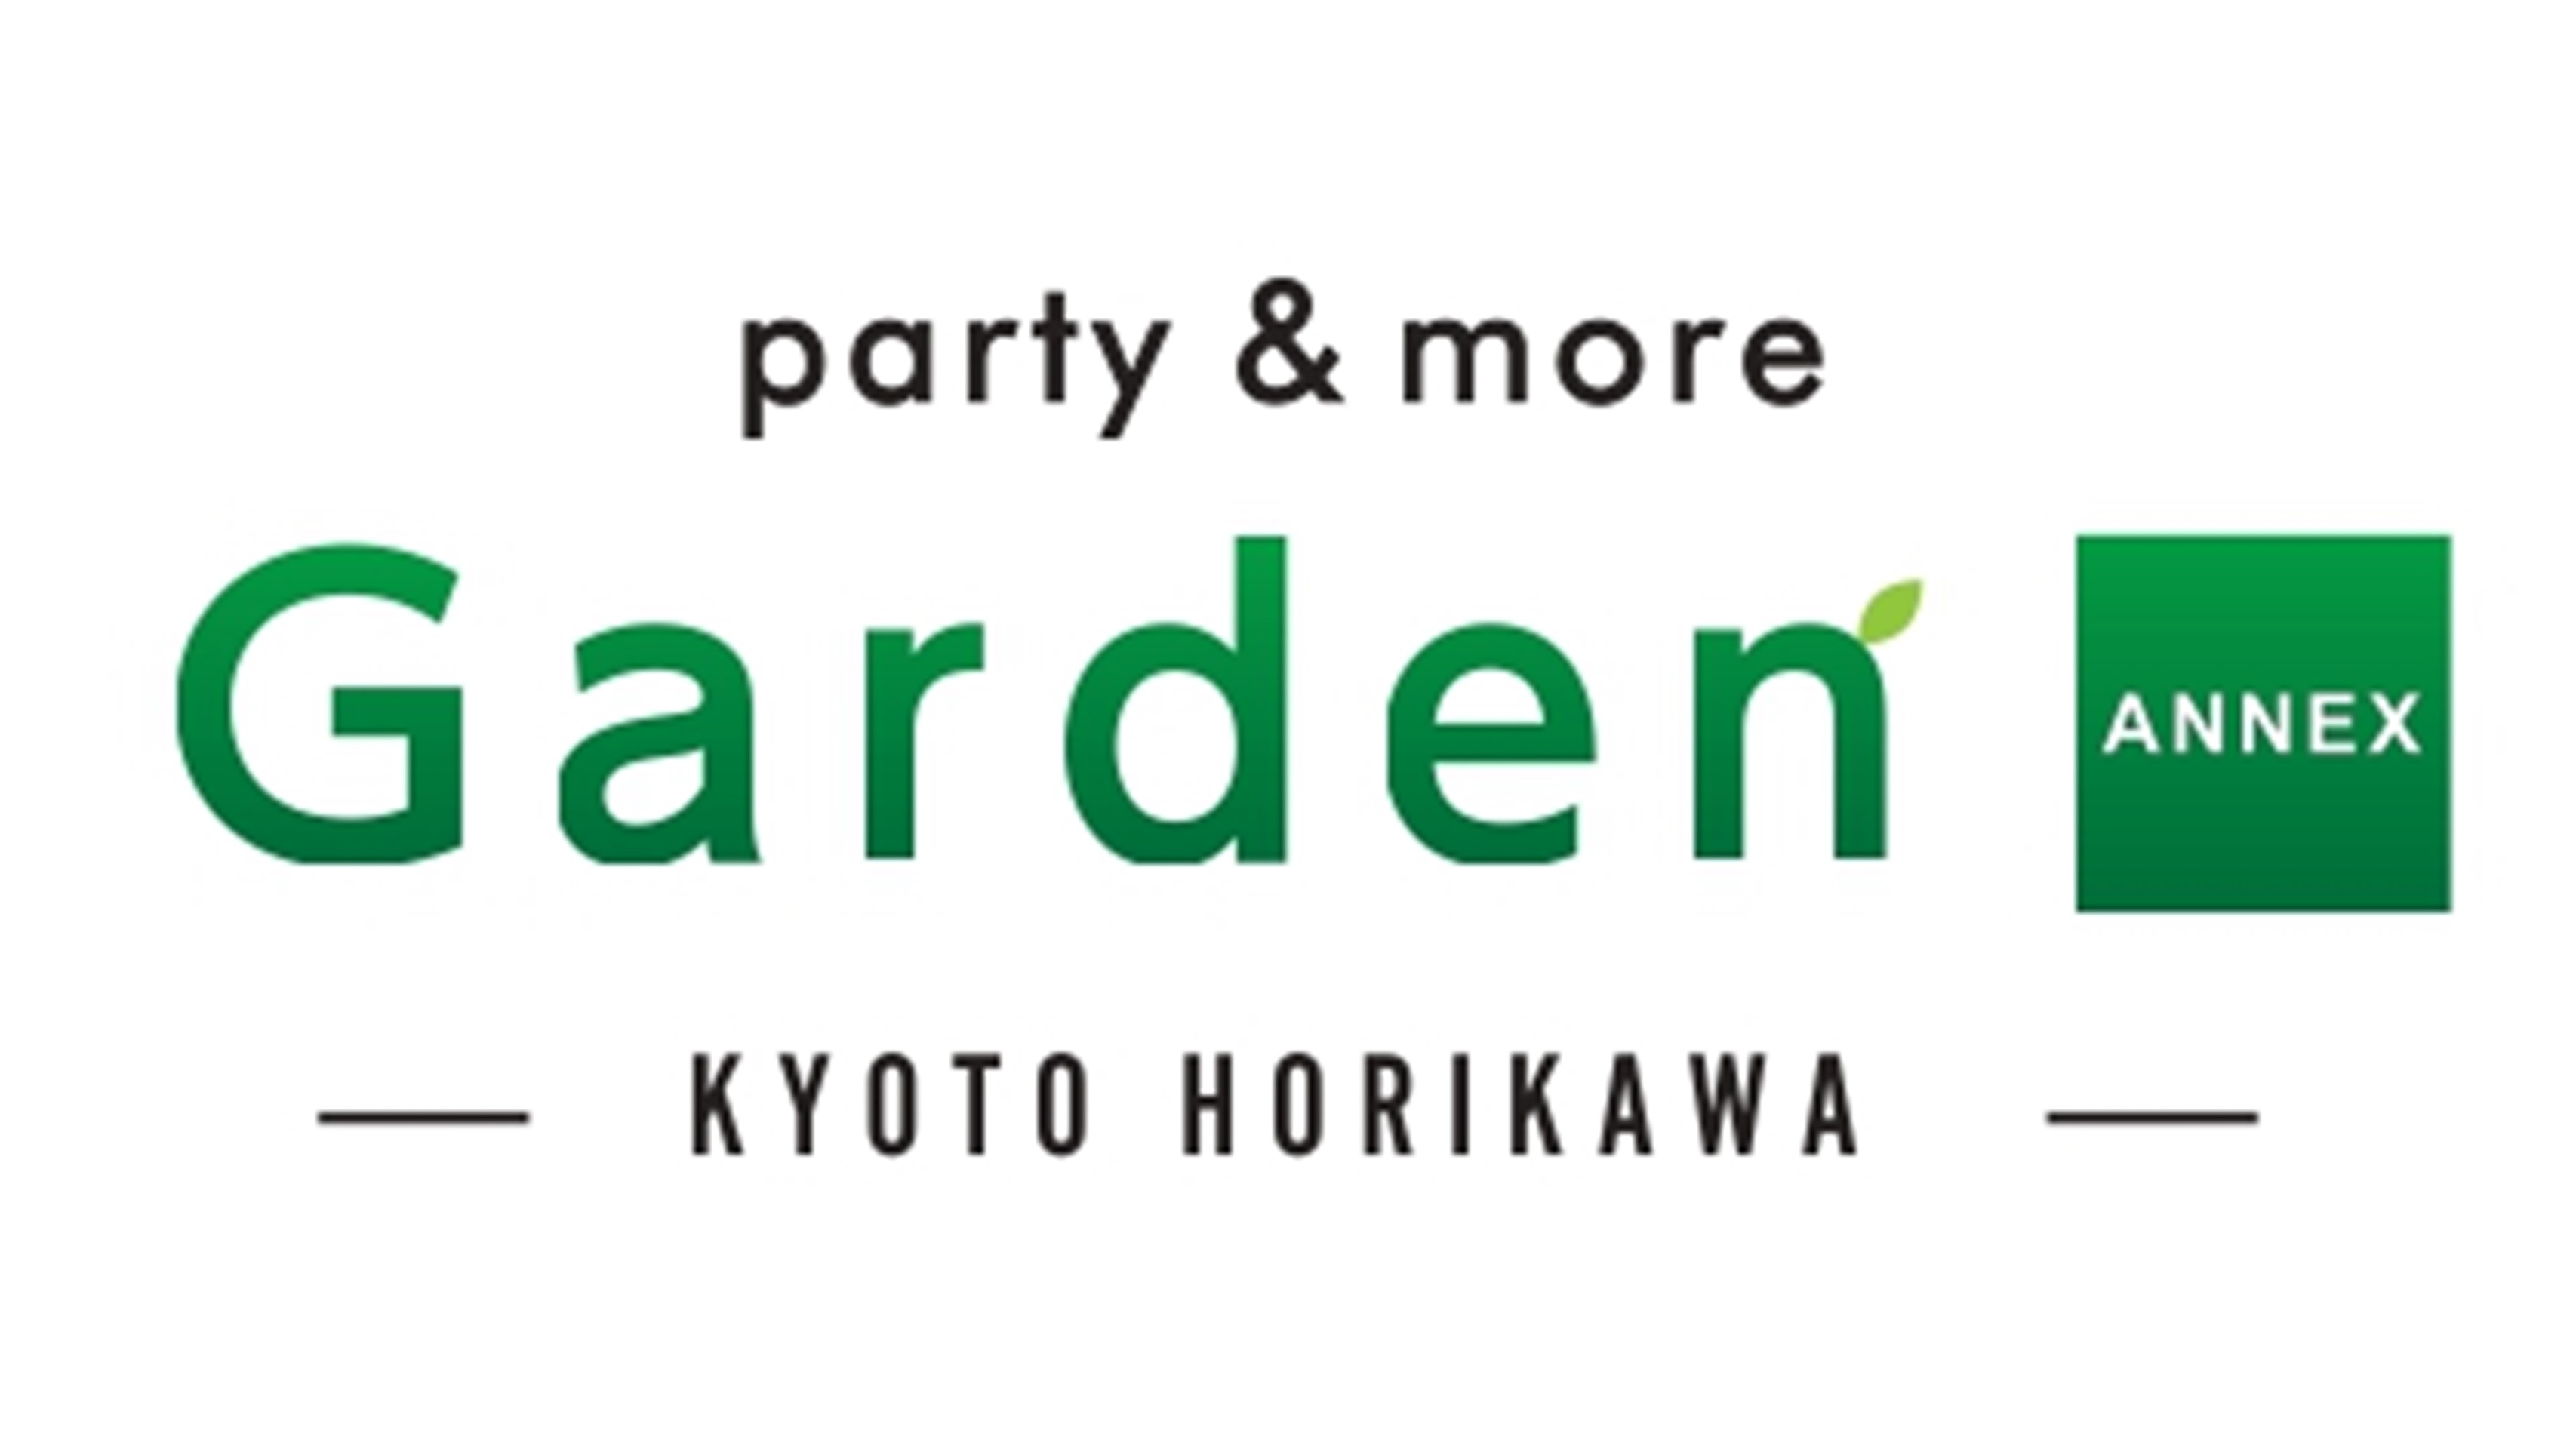 レストラン「party & more Garden ANNEX -KYOTO HORIKAWA-」